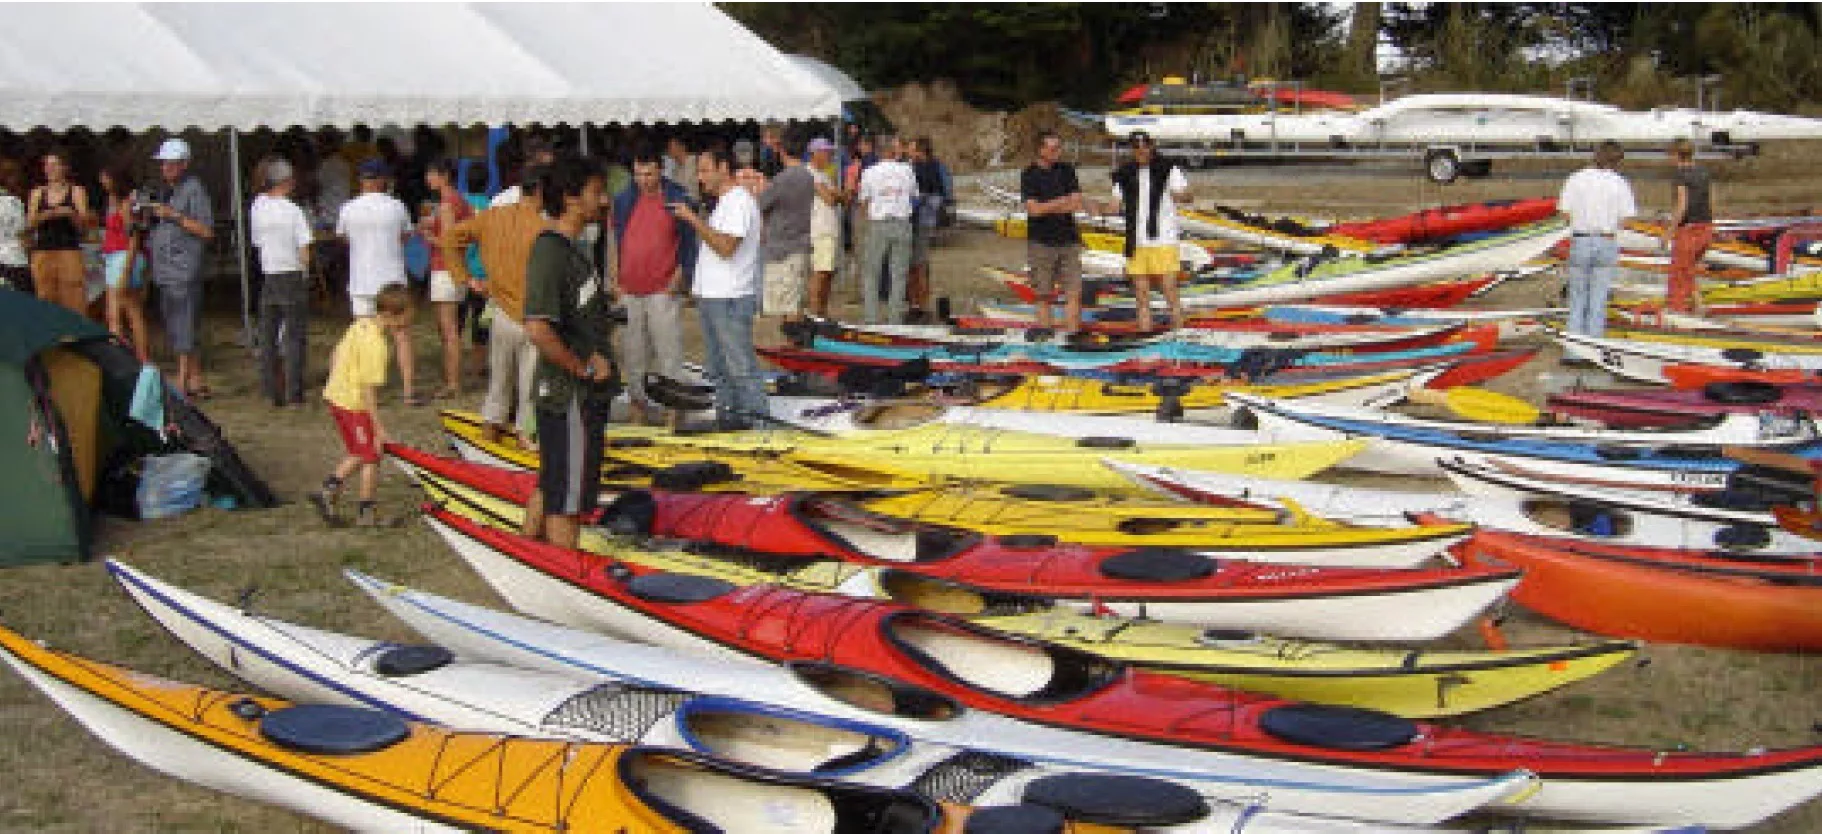 4ème Rencontre Internationale des kayakistes de mer 2009 – Landéda